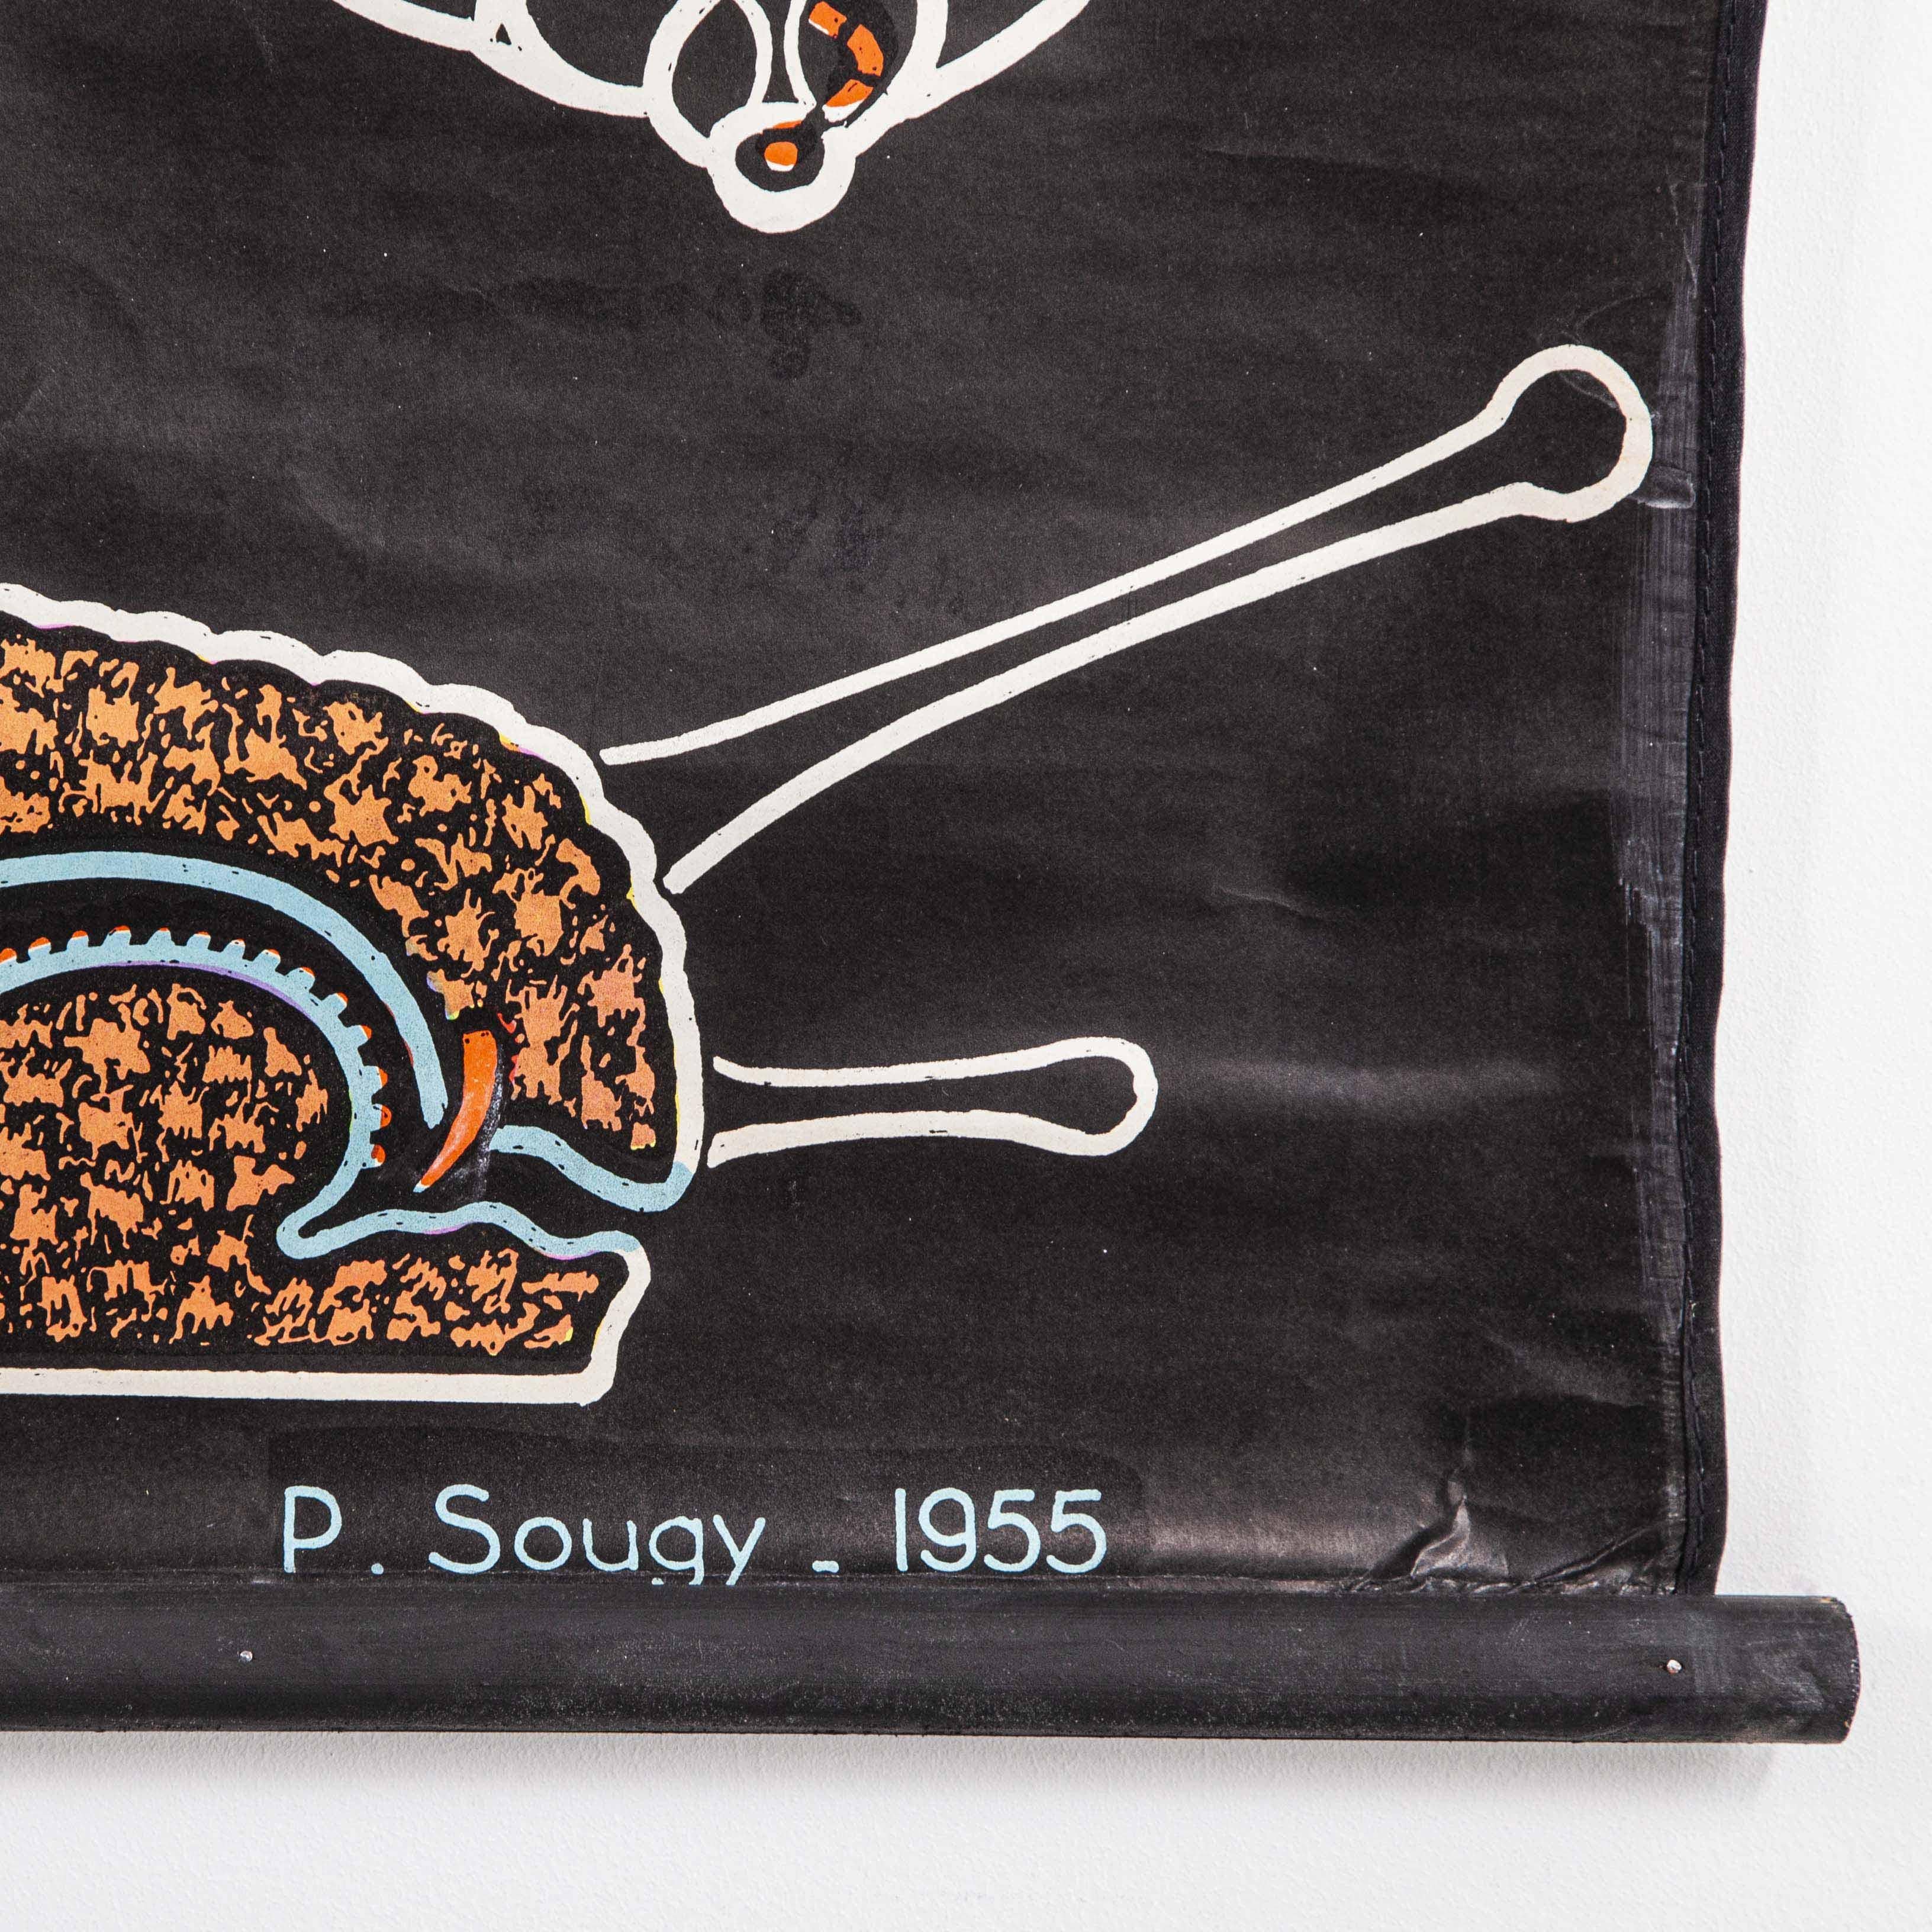 1955 Dr Auzoux French Educational Chart, P.Sougy, L'Escargot 'Snail' S54 3